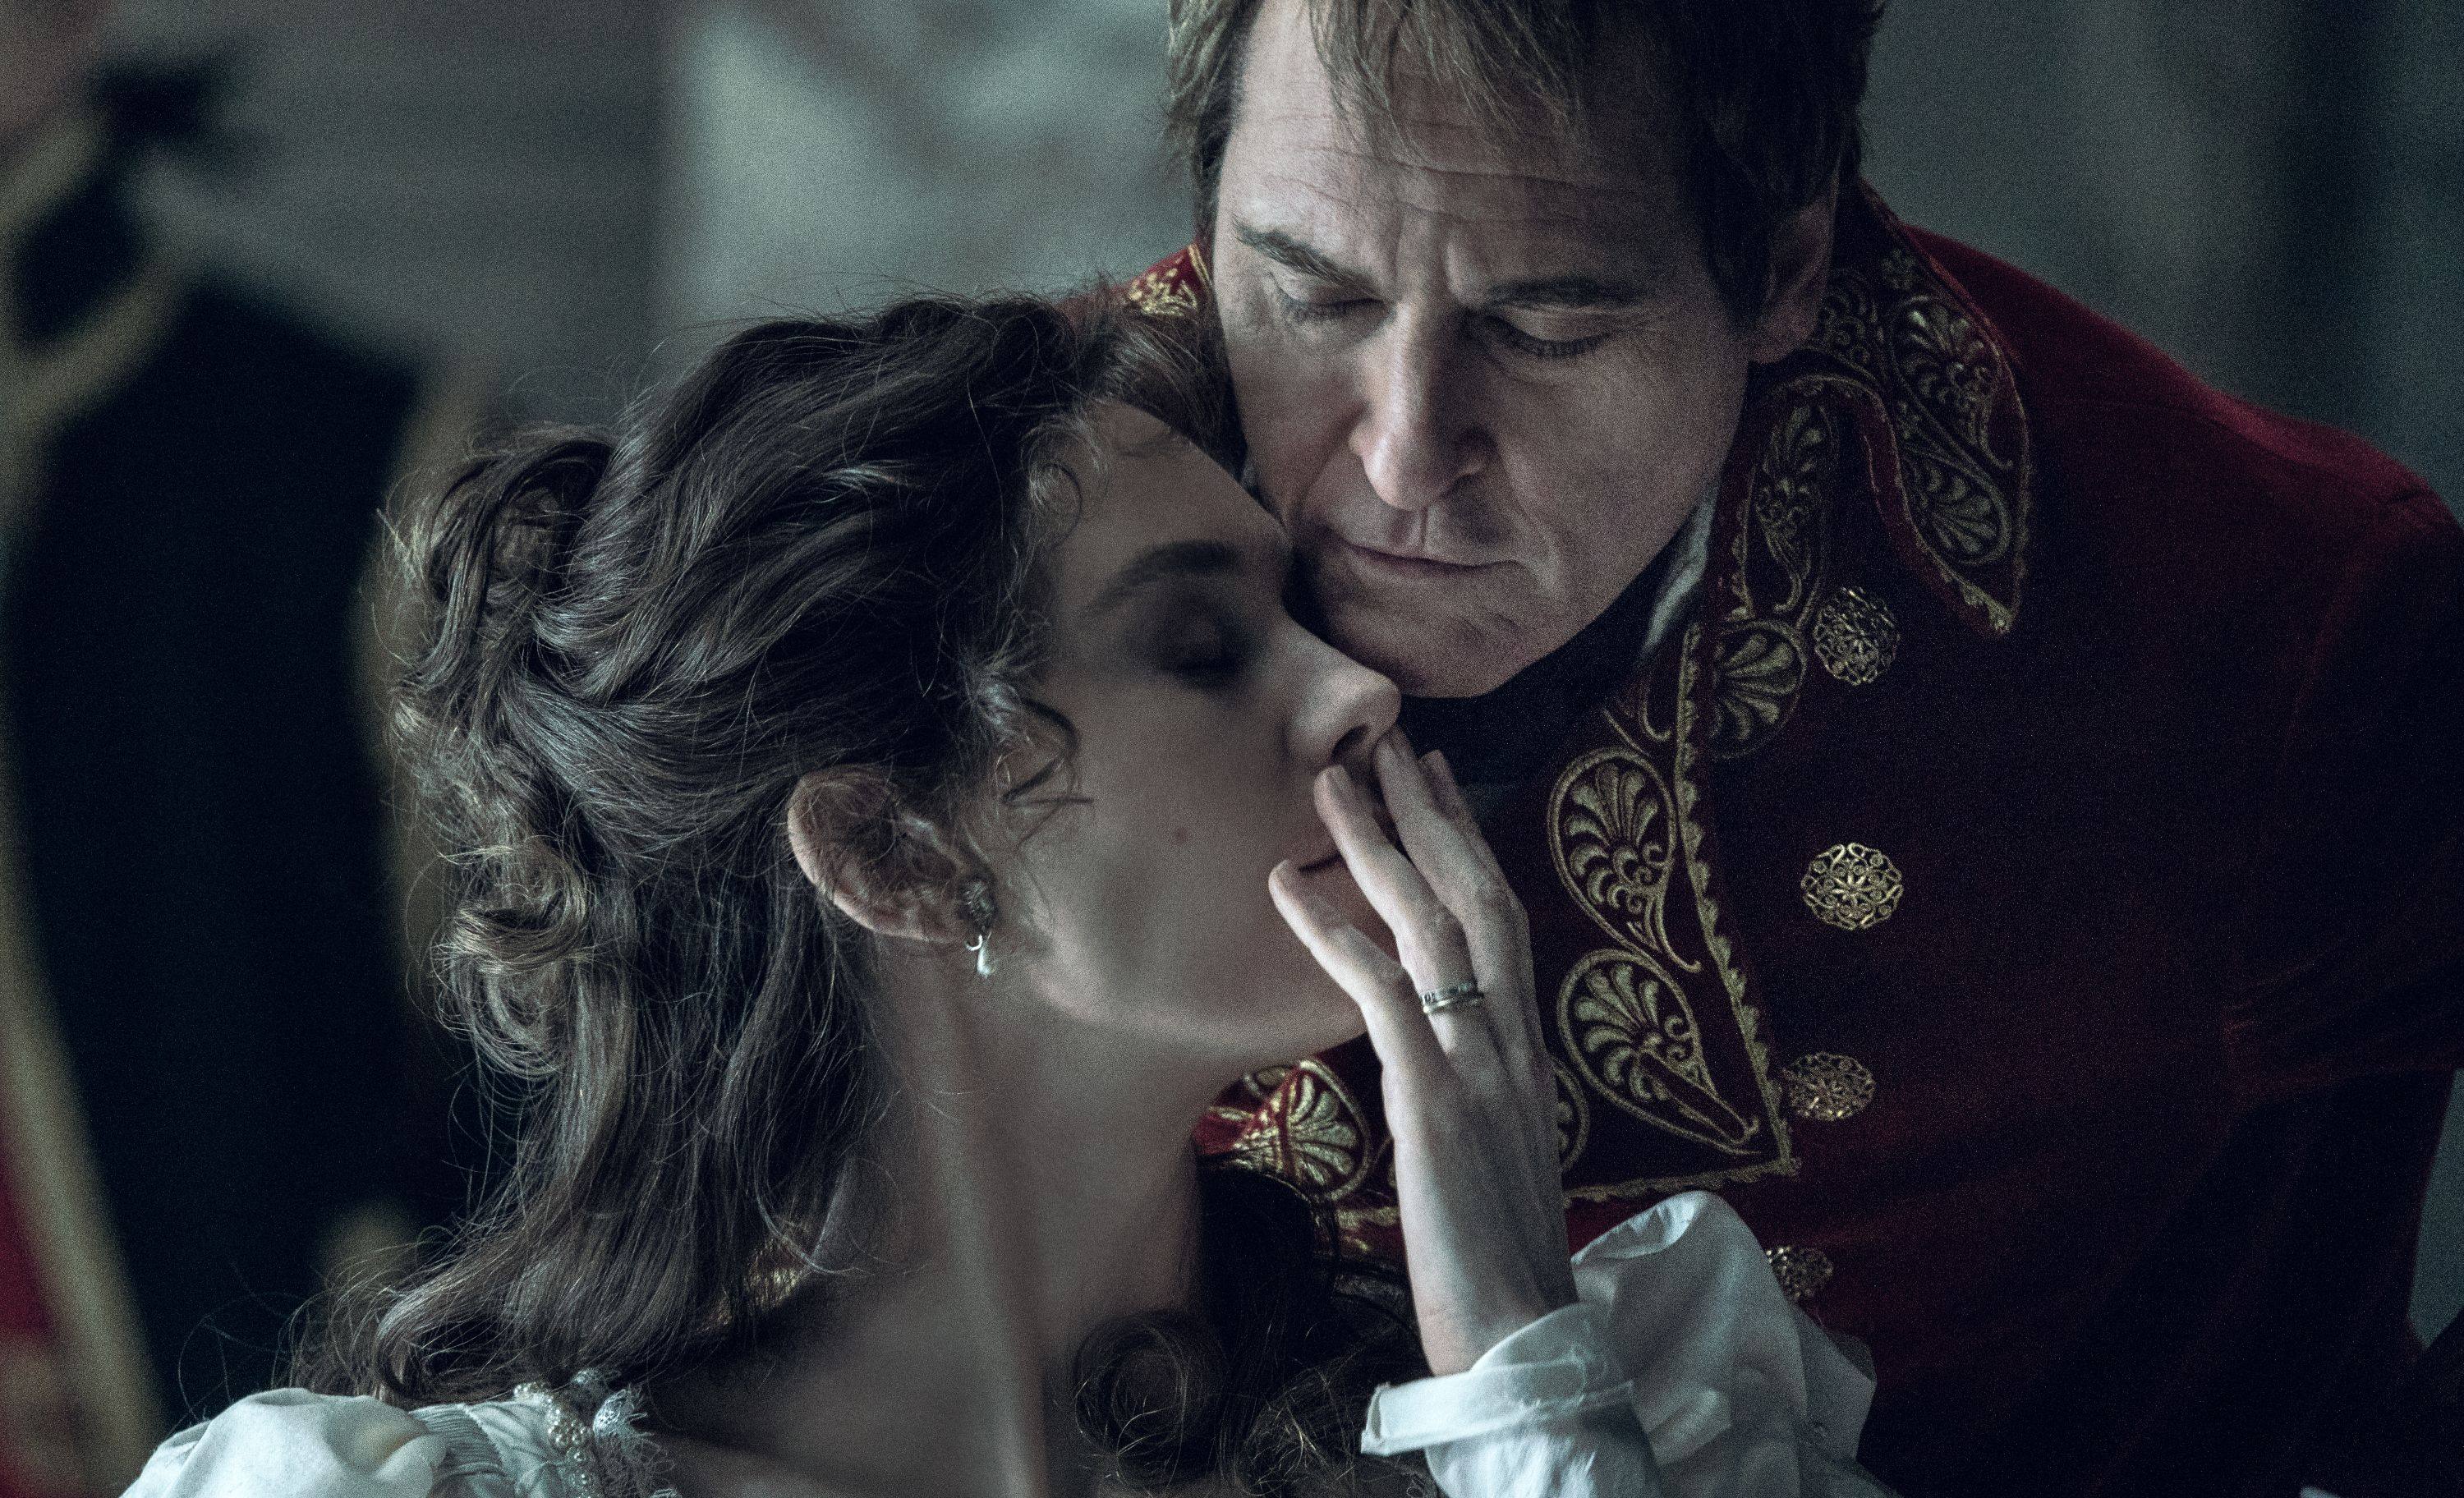 Vanessa Kirby and Joaquin Phoenix in a still from “Napoleon”.